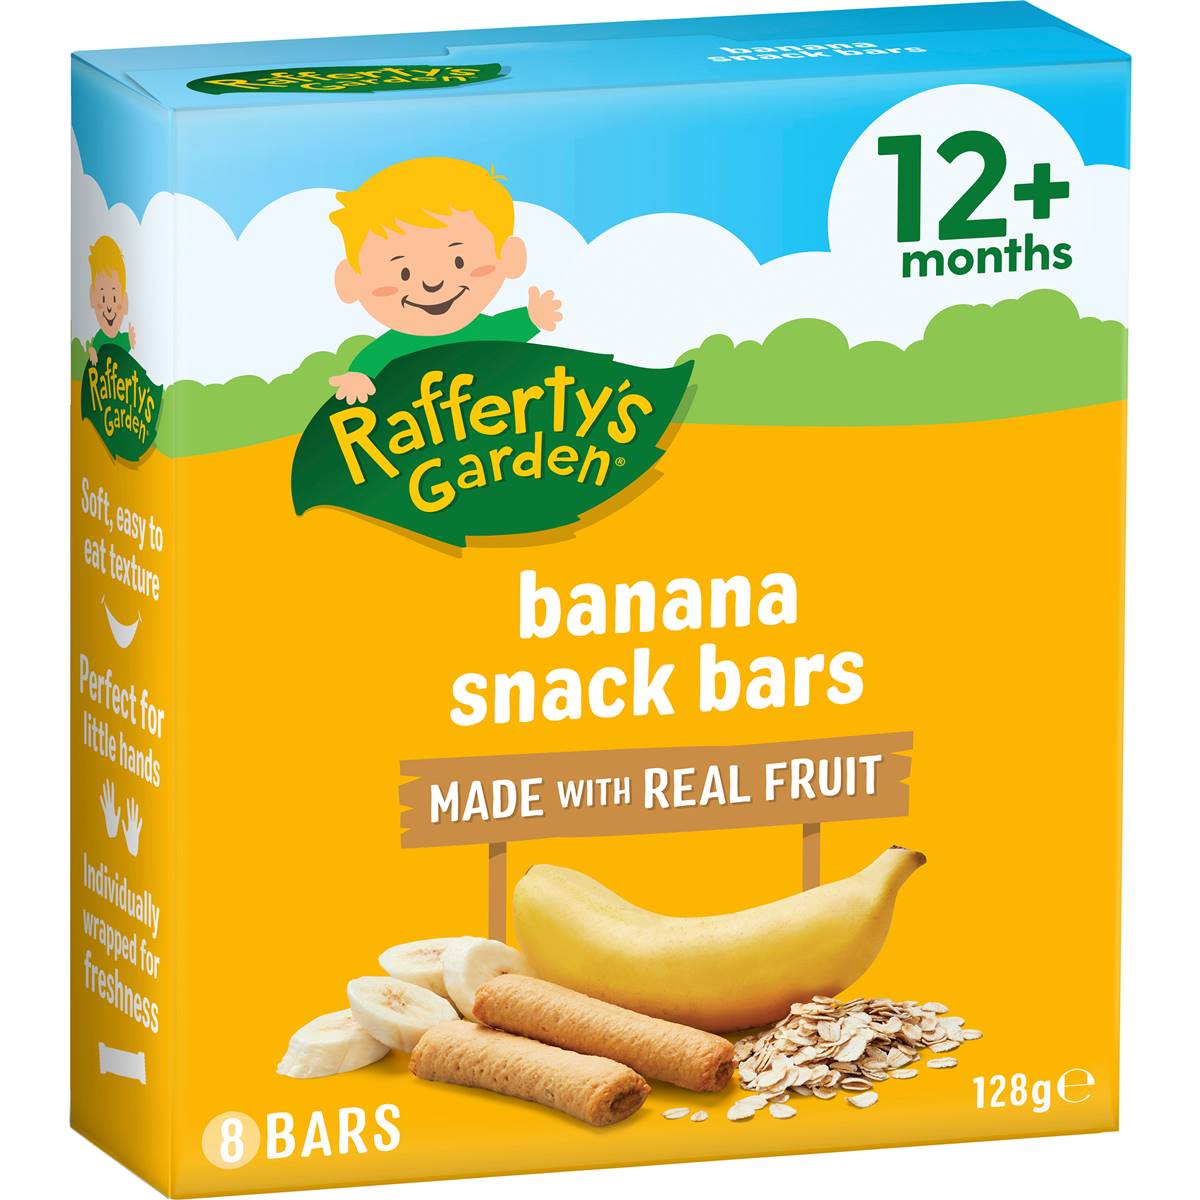 Calories in Rafferty's Garden Baby Food Banana Fruit Snack Bars 12+ Months